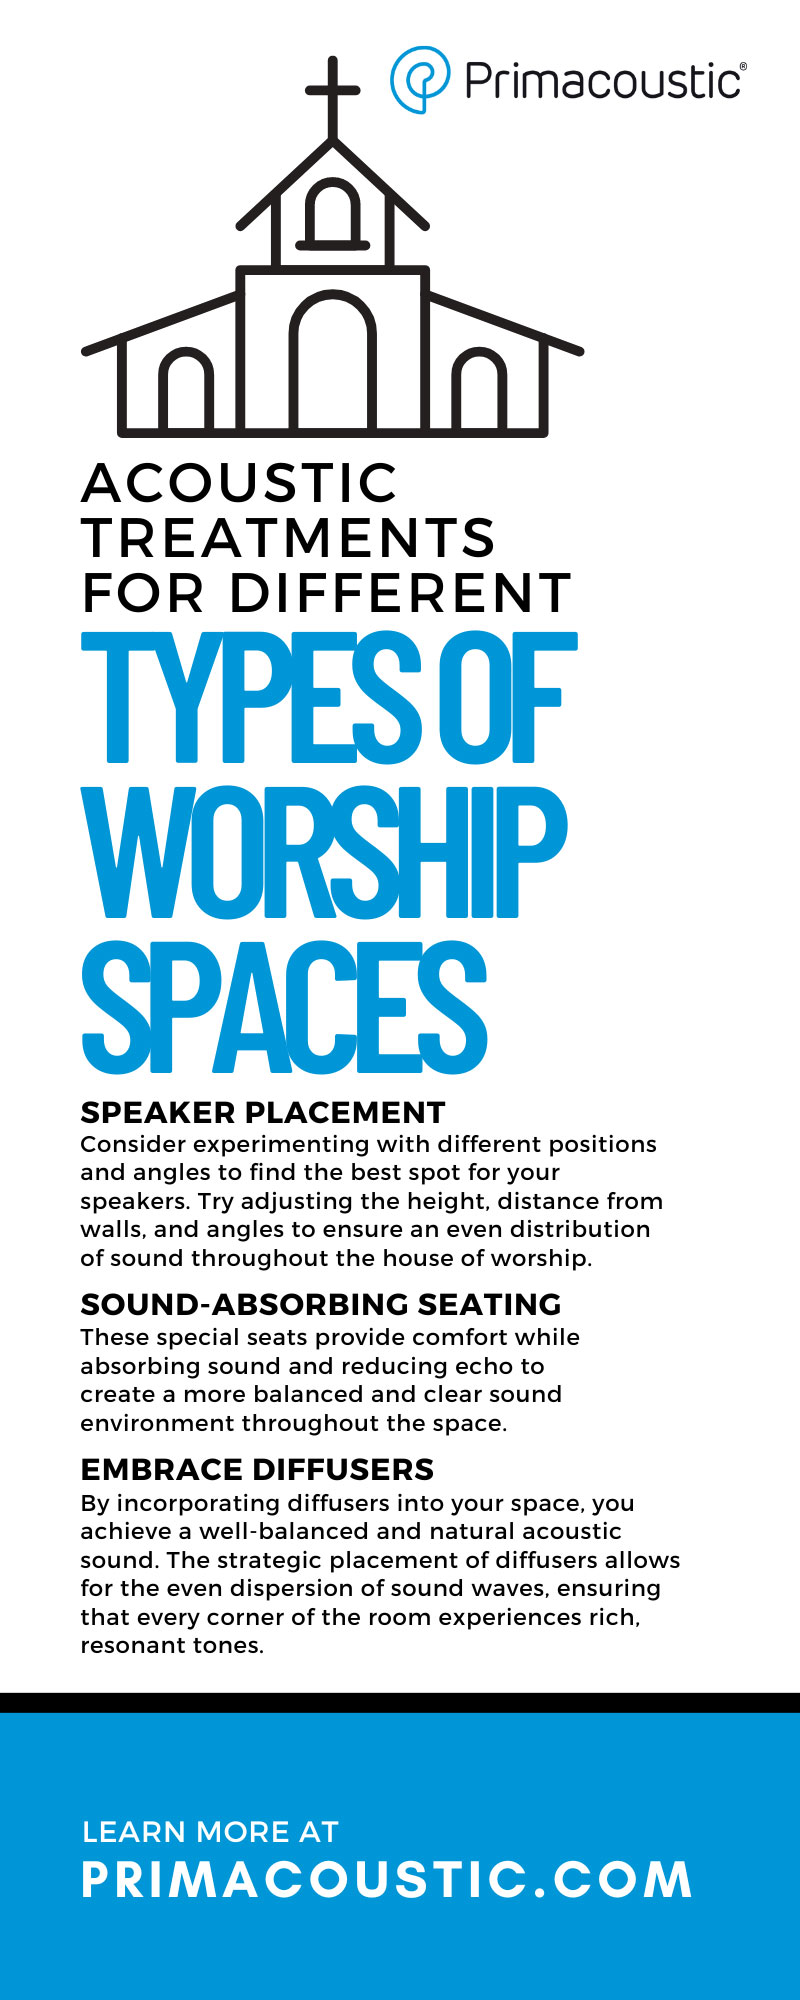 Radialengineeringltd 285199 Types Worship Spaces Infographic1